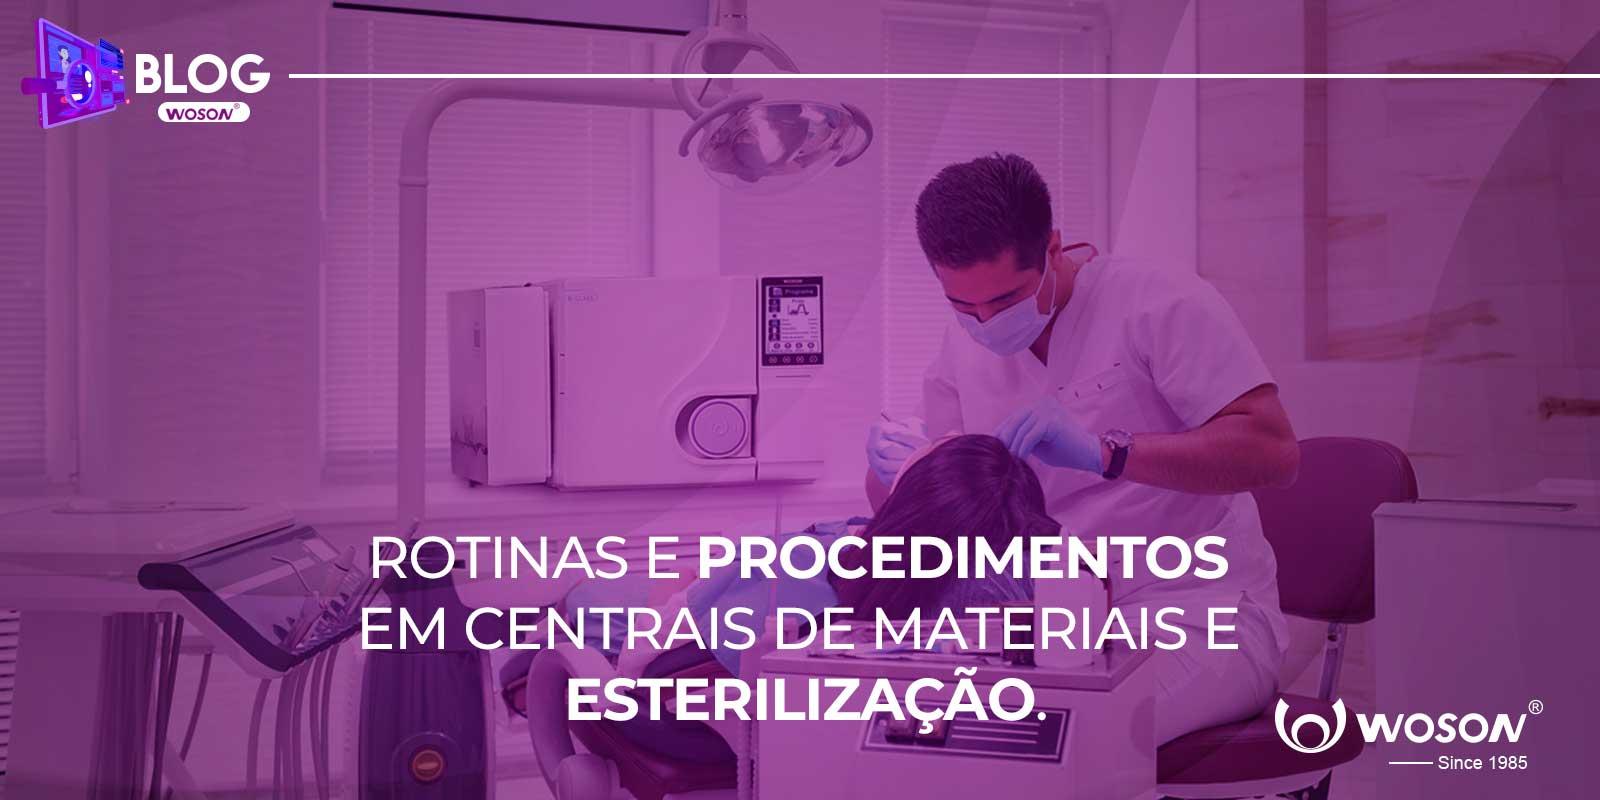 ROTINAS E PROCEDIMENTOS EM CENTRAIS DE MATERIAIS E ESTERILIZAÇÃO (CME).